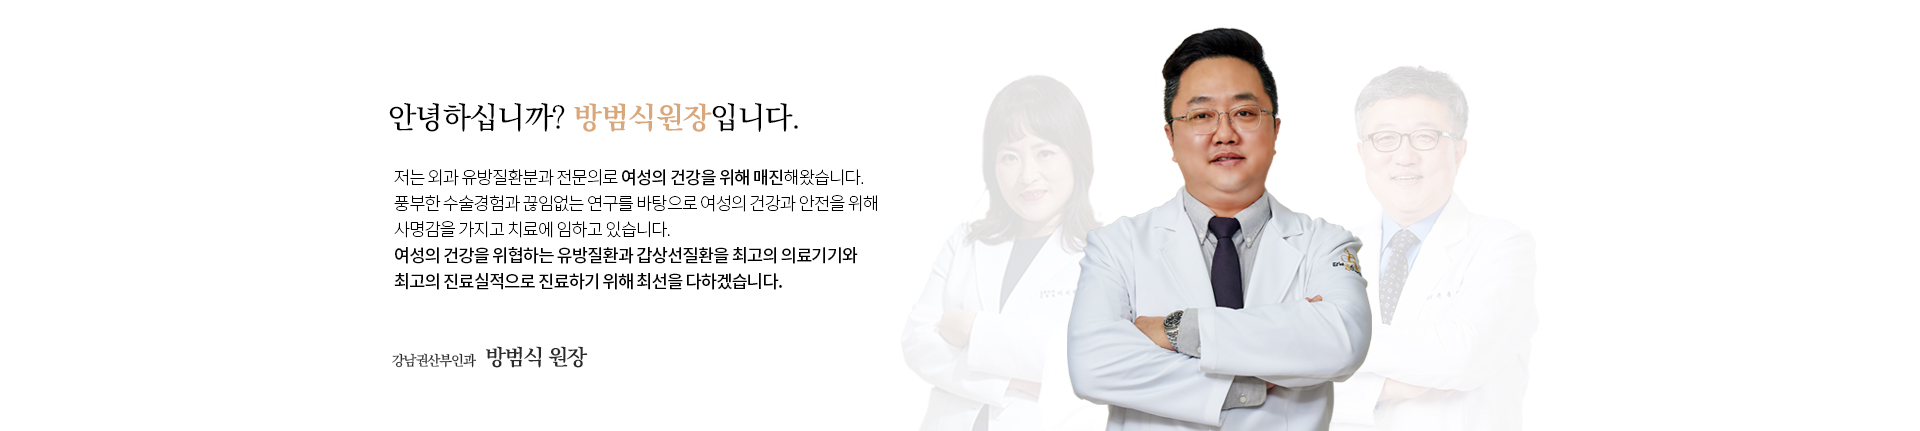 방범식원장 소개